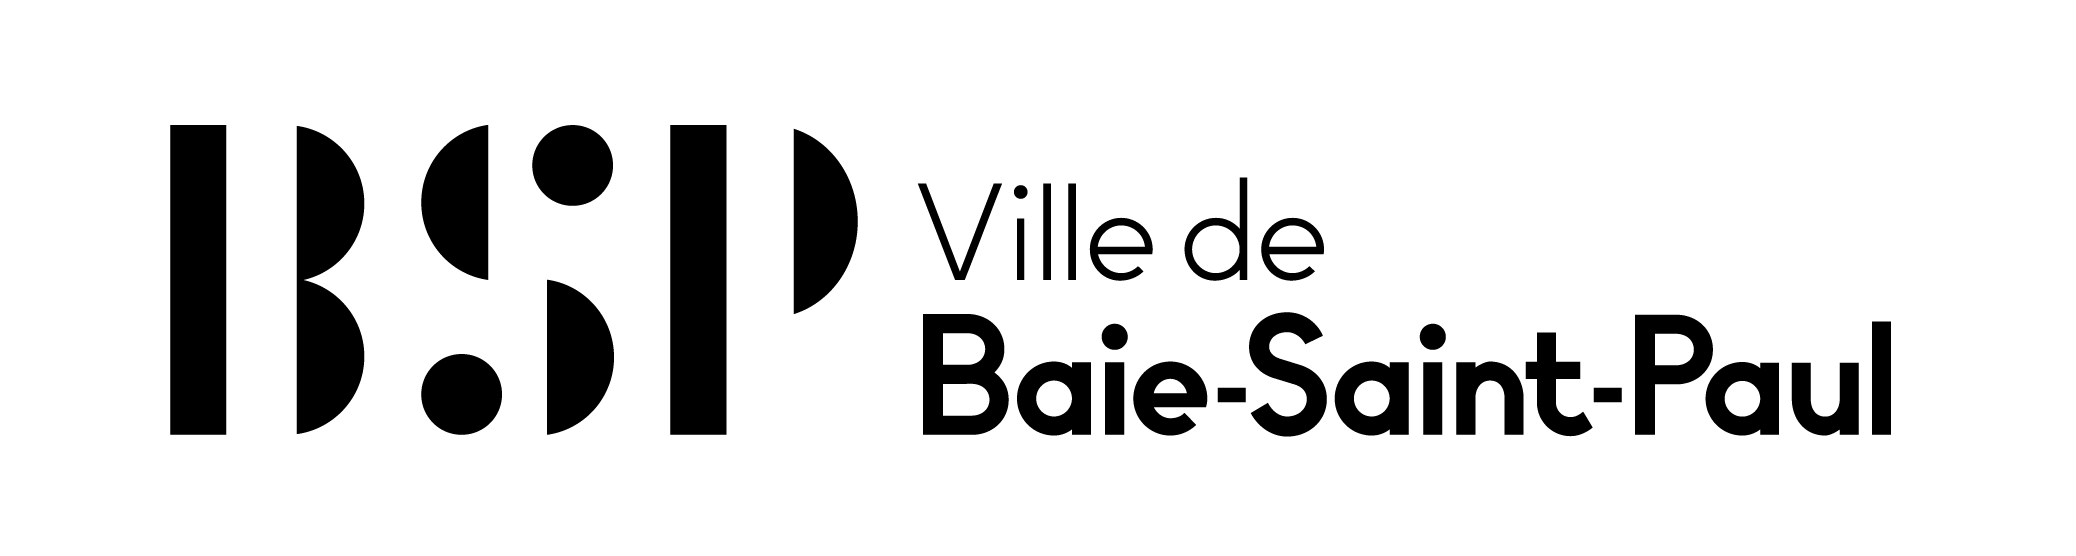 Baie-Saint-Paul